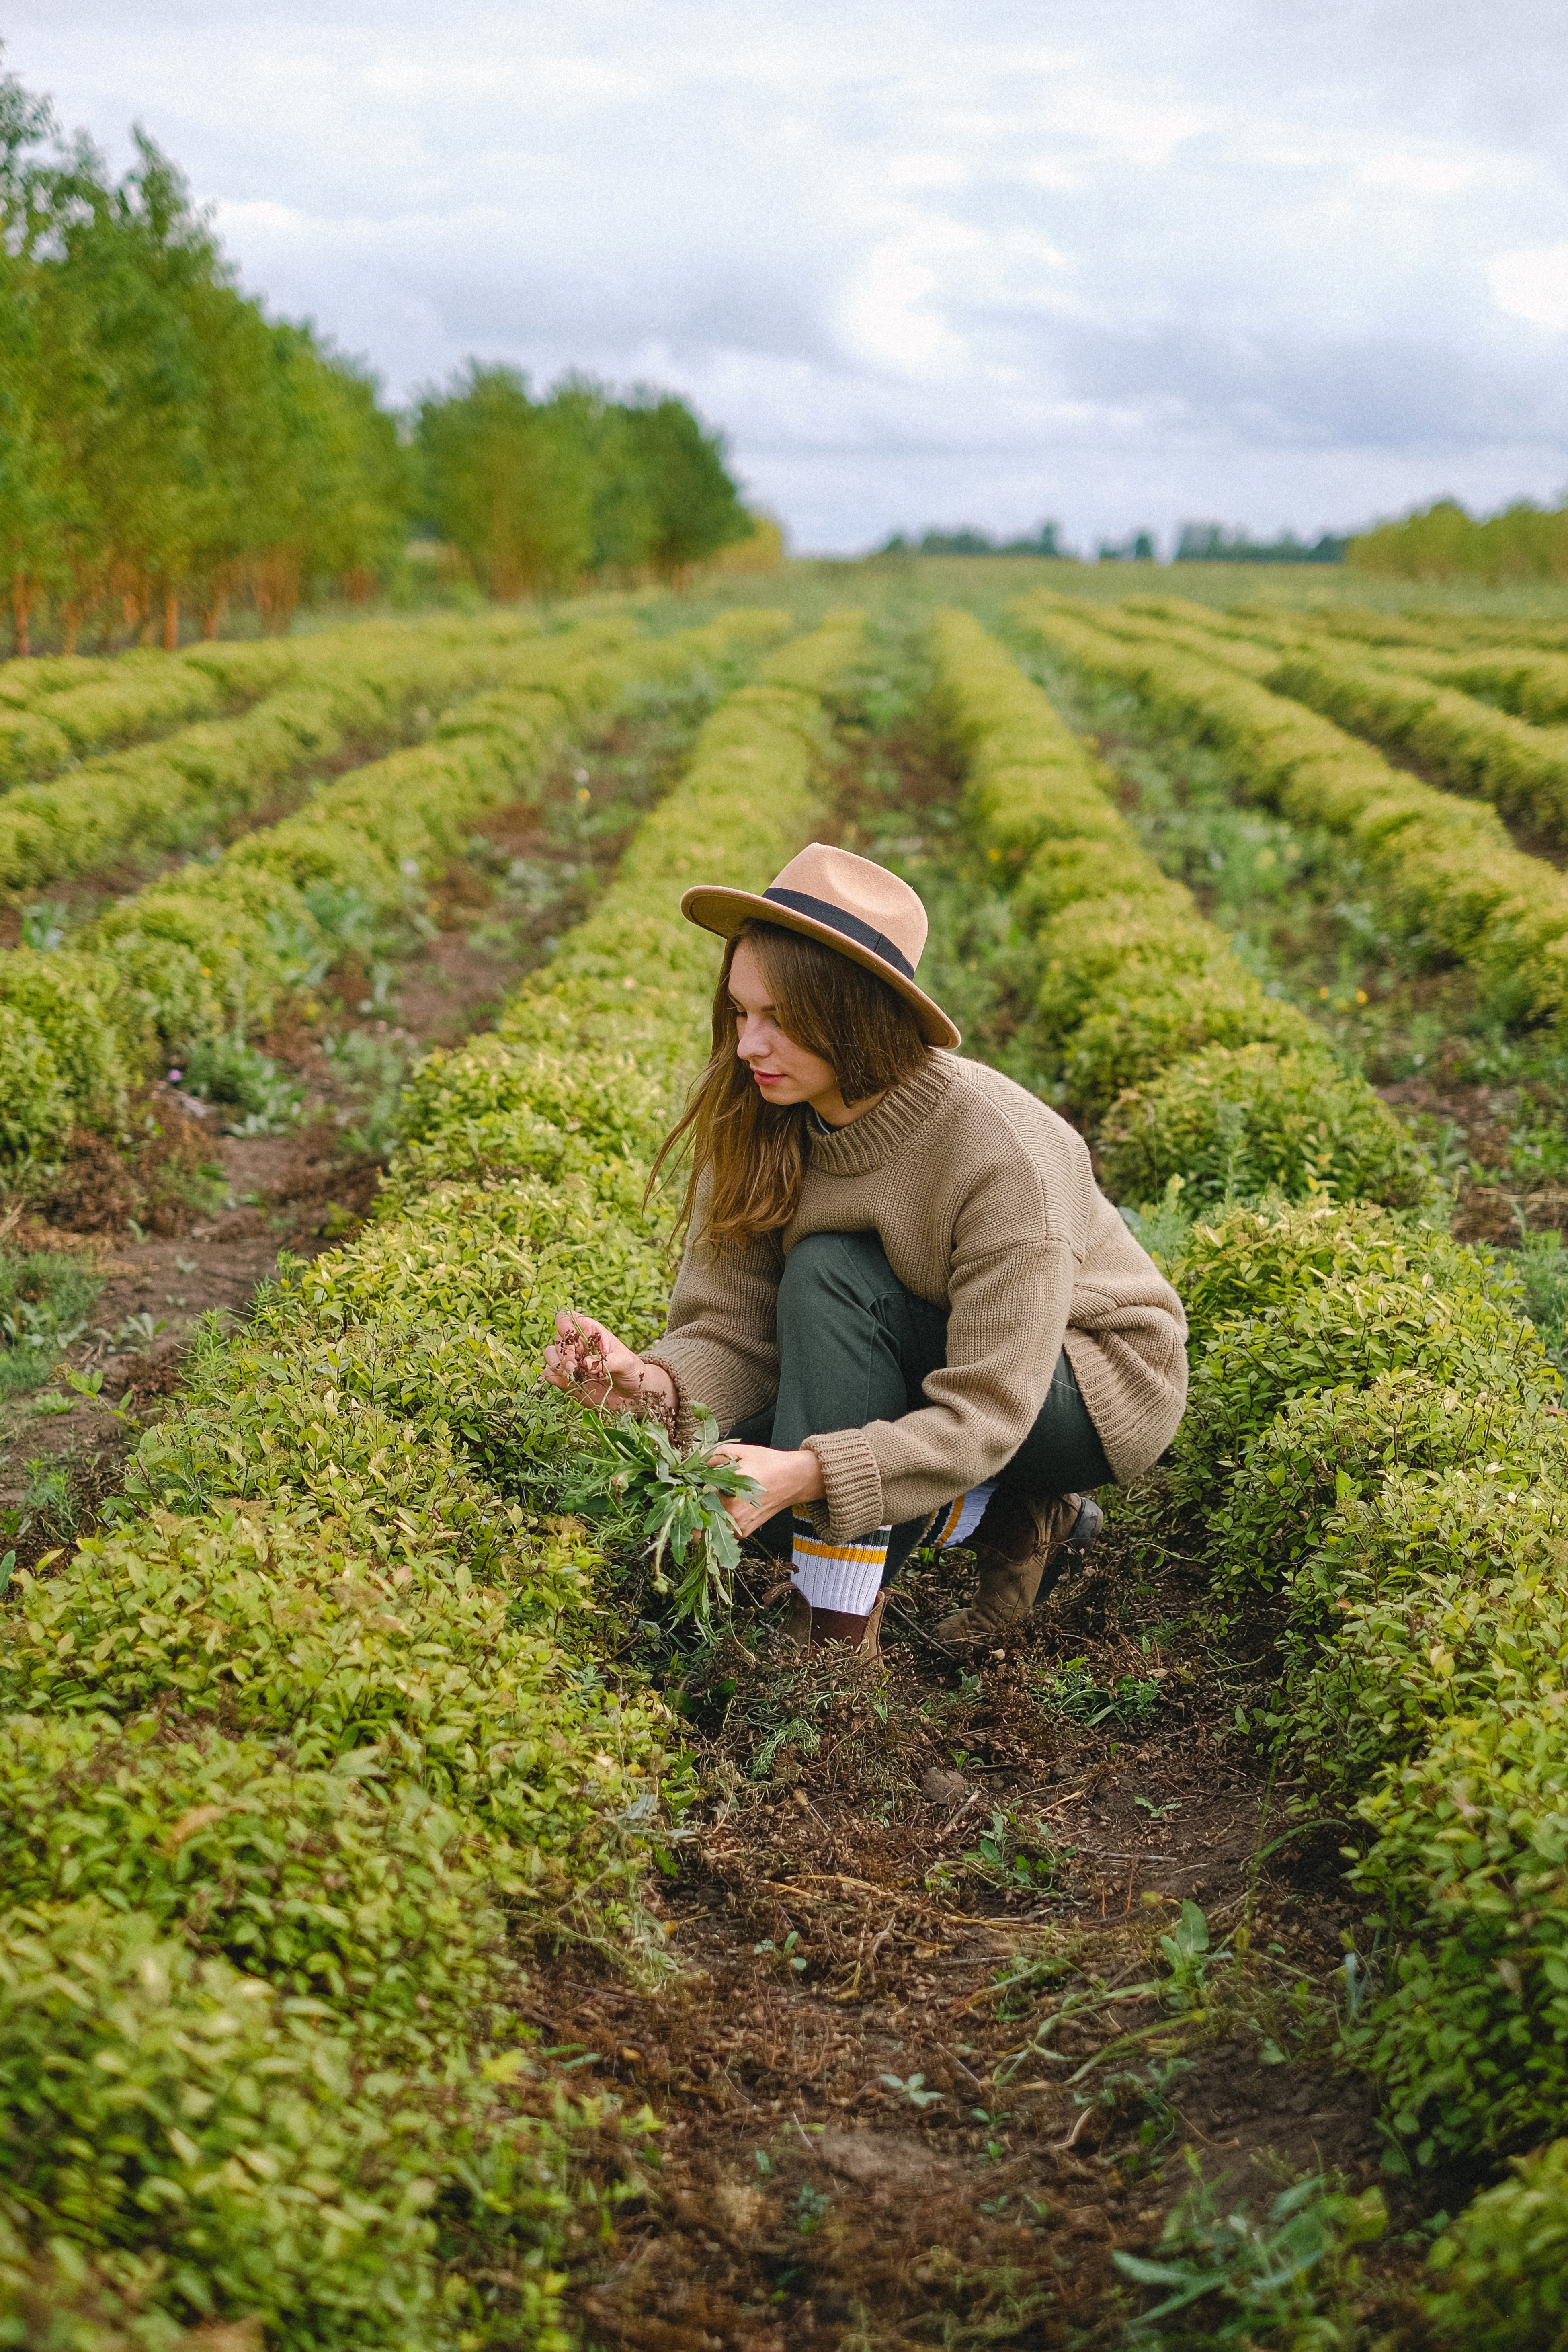 Callie arbeitete allein auf der Farm, um ihre Kinder zu ernähren. | Quelle: Pexels